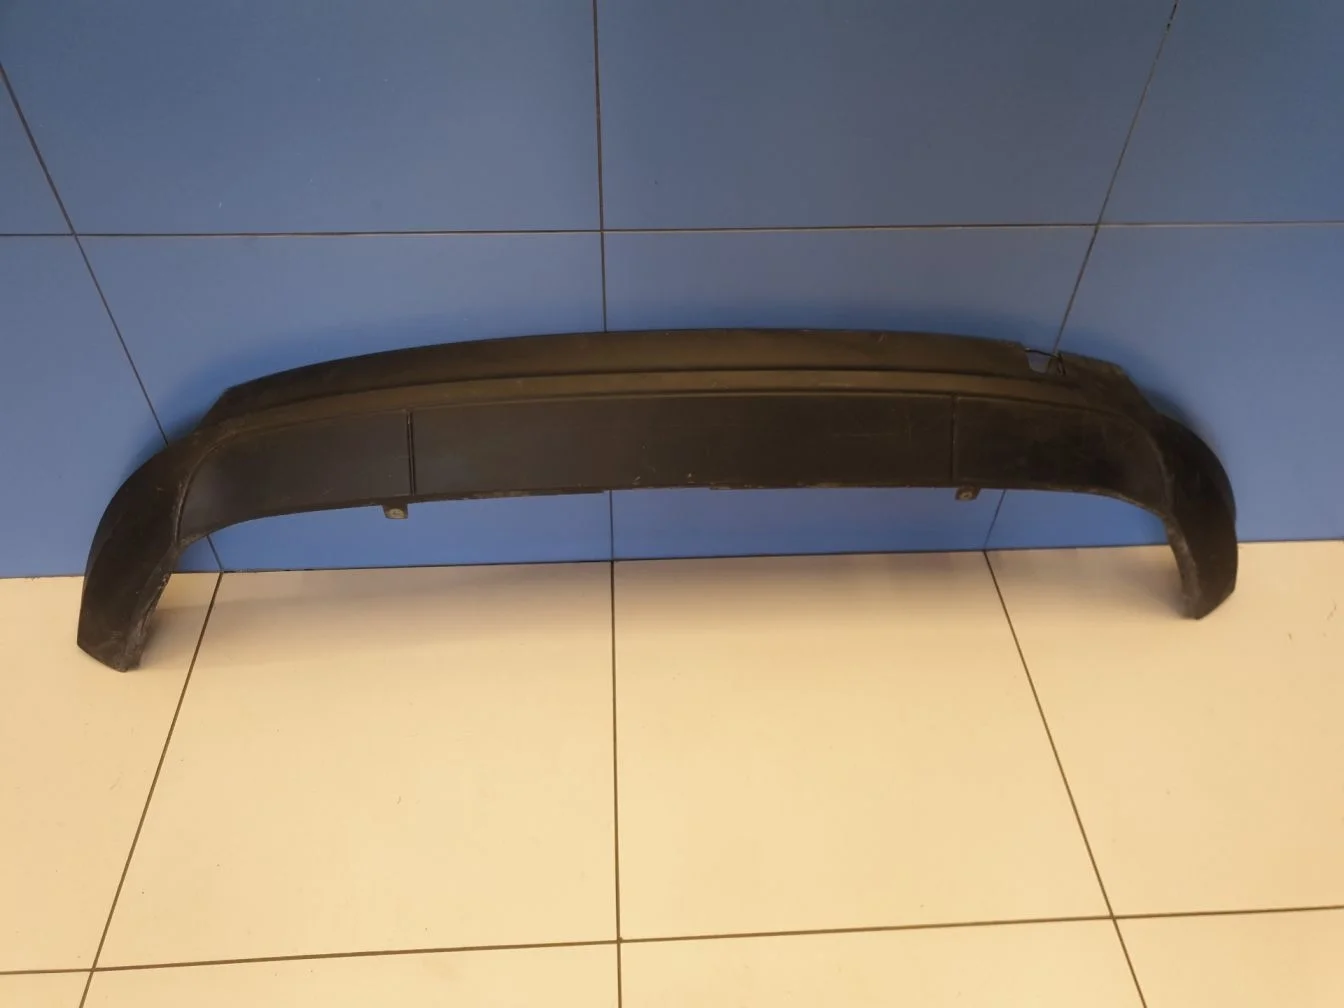 Юбка заднего бампера для Ford Focus 3 2011-2019